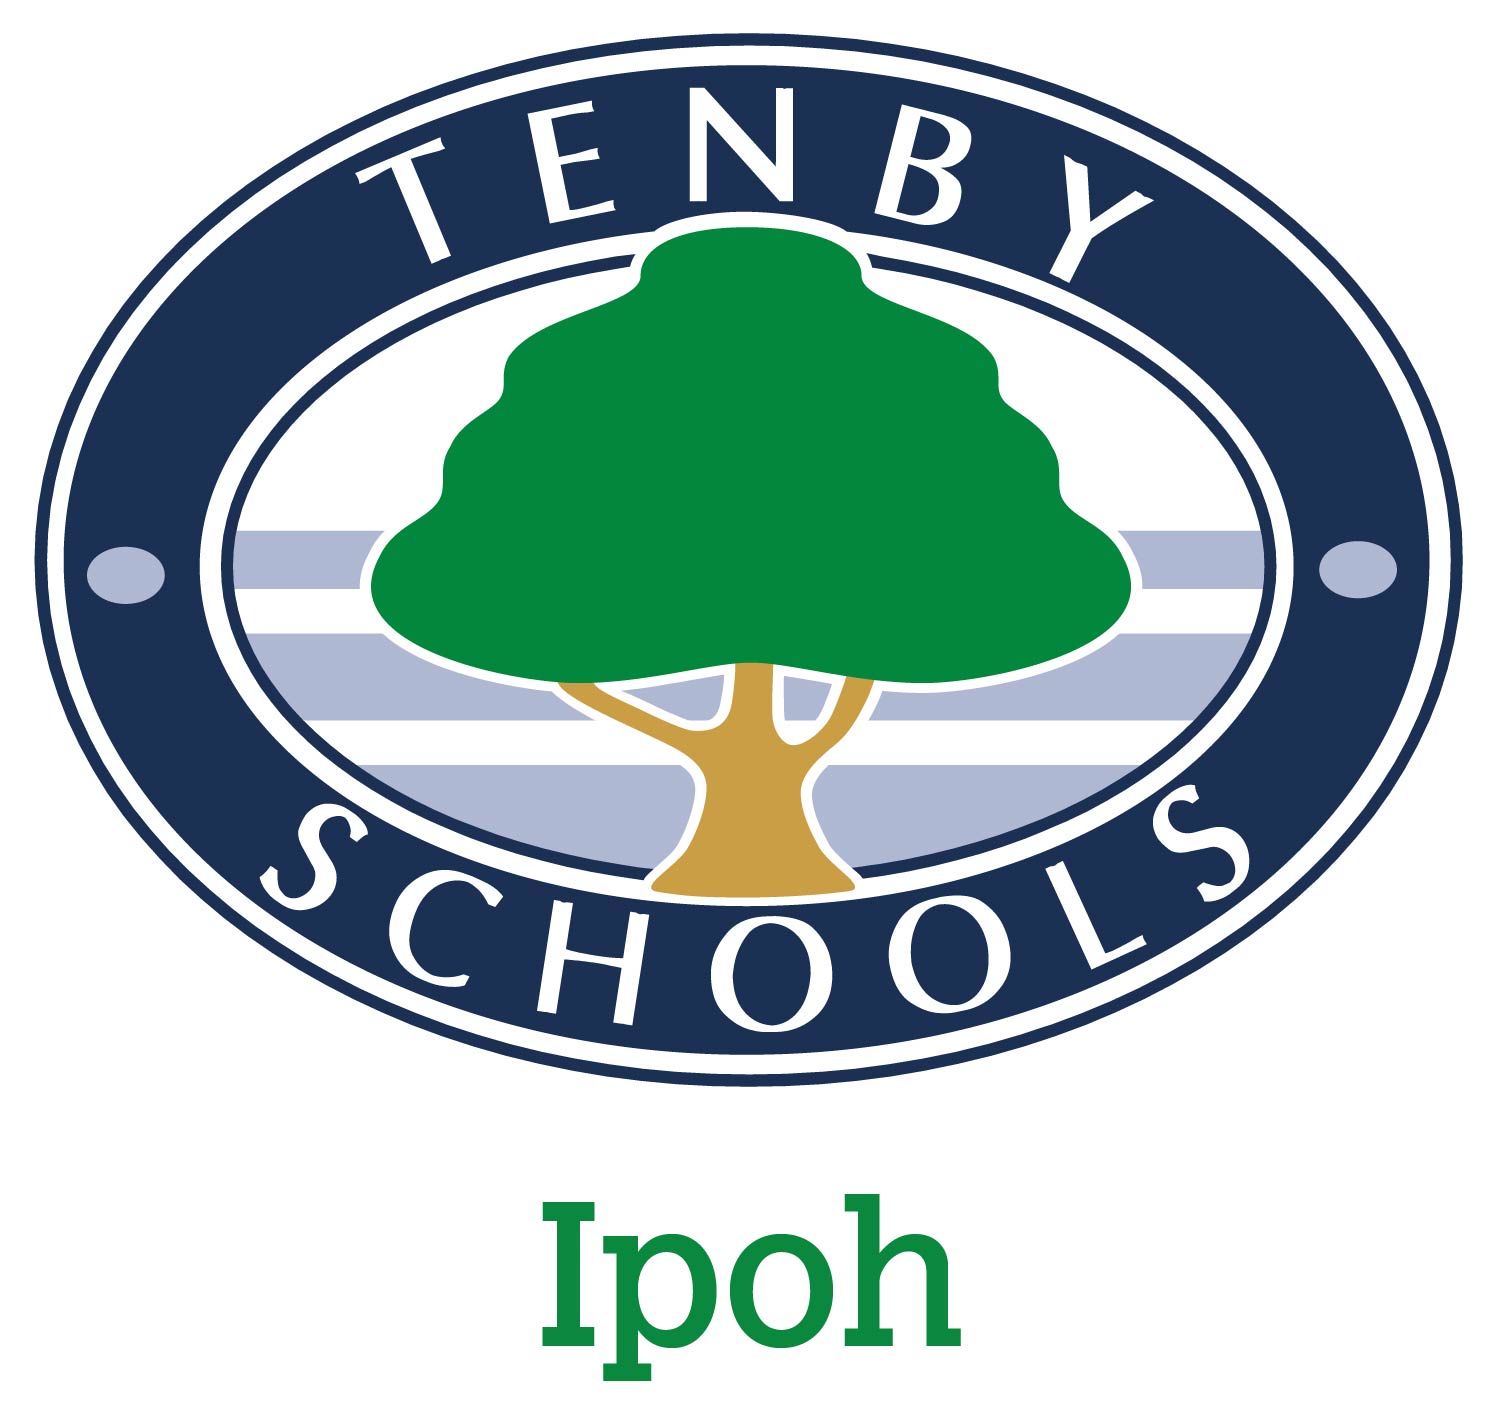 Tenby Schools Ipoh Logo